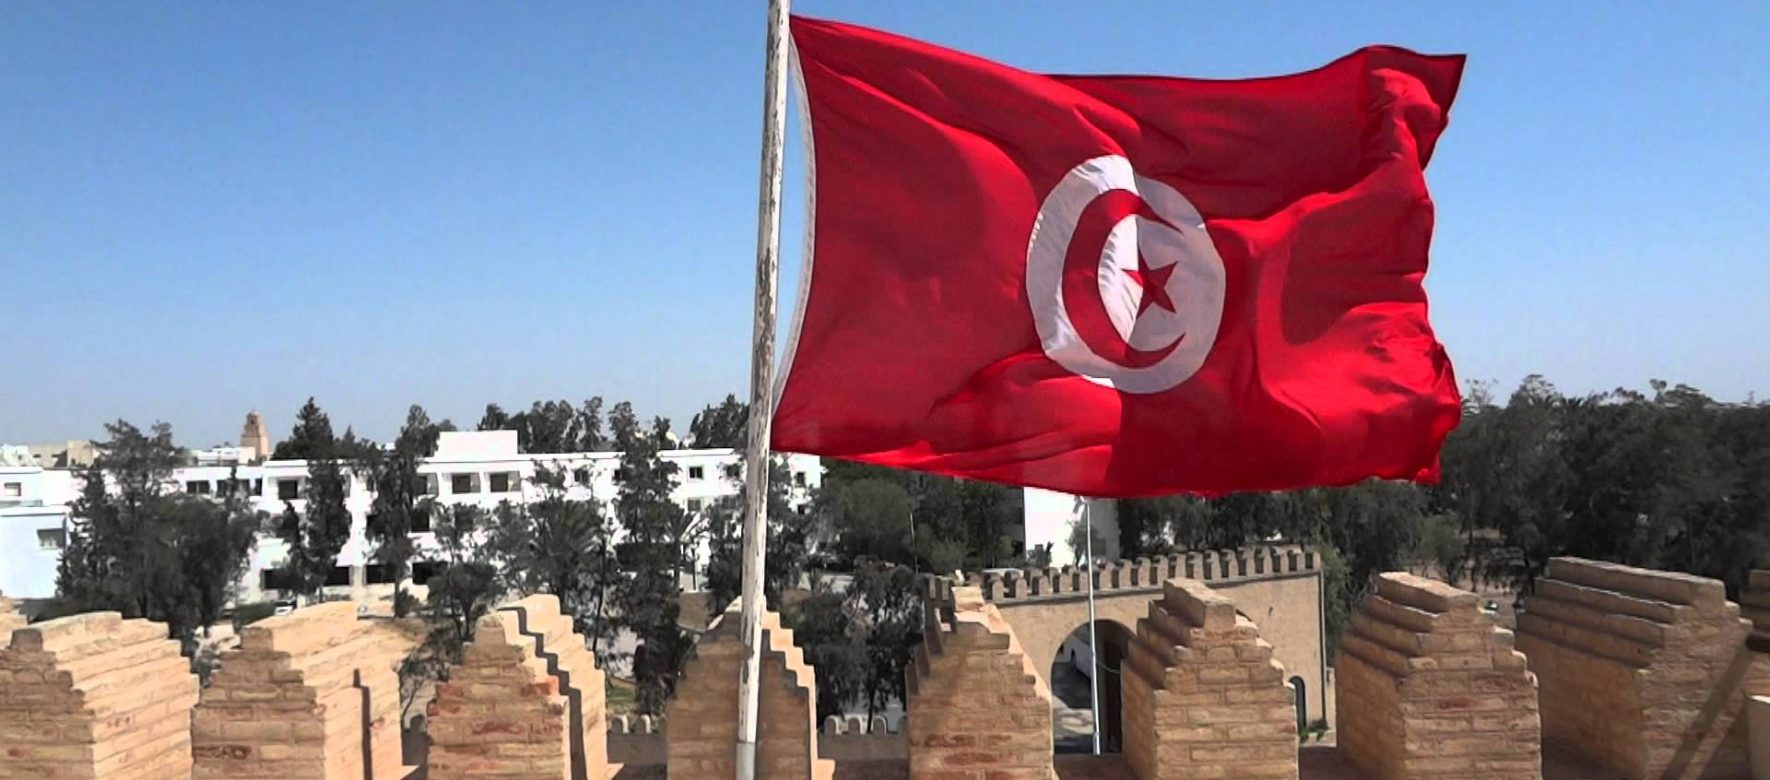 Tunisie : La cinquième tranche du prêt de 2,9 milliards de dollars approuvée par le FMI